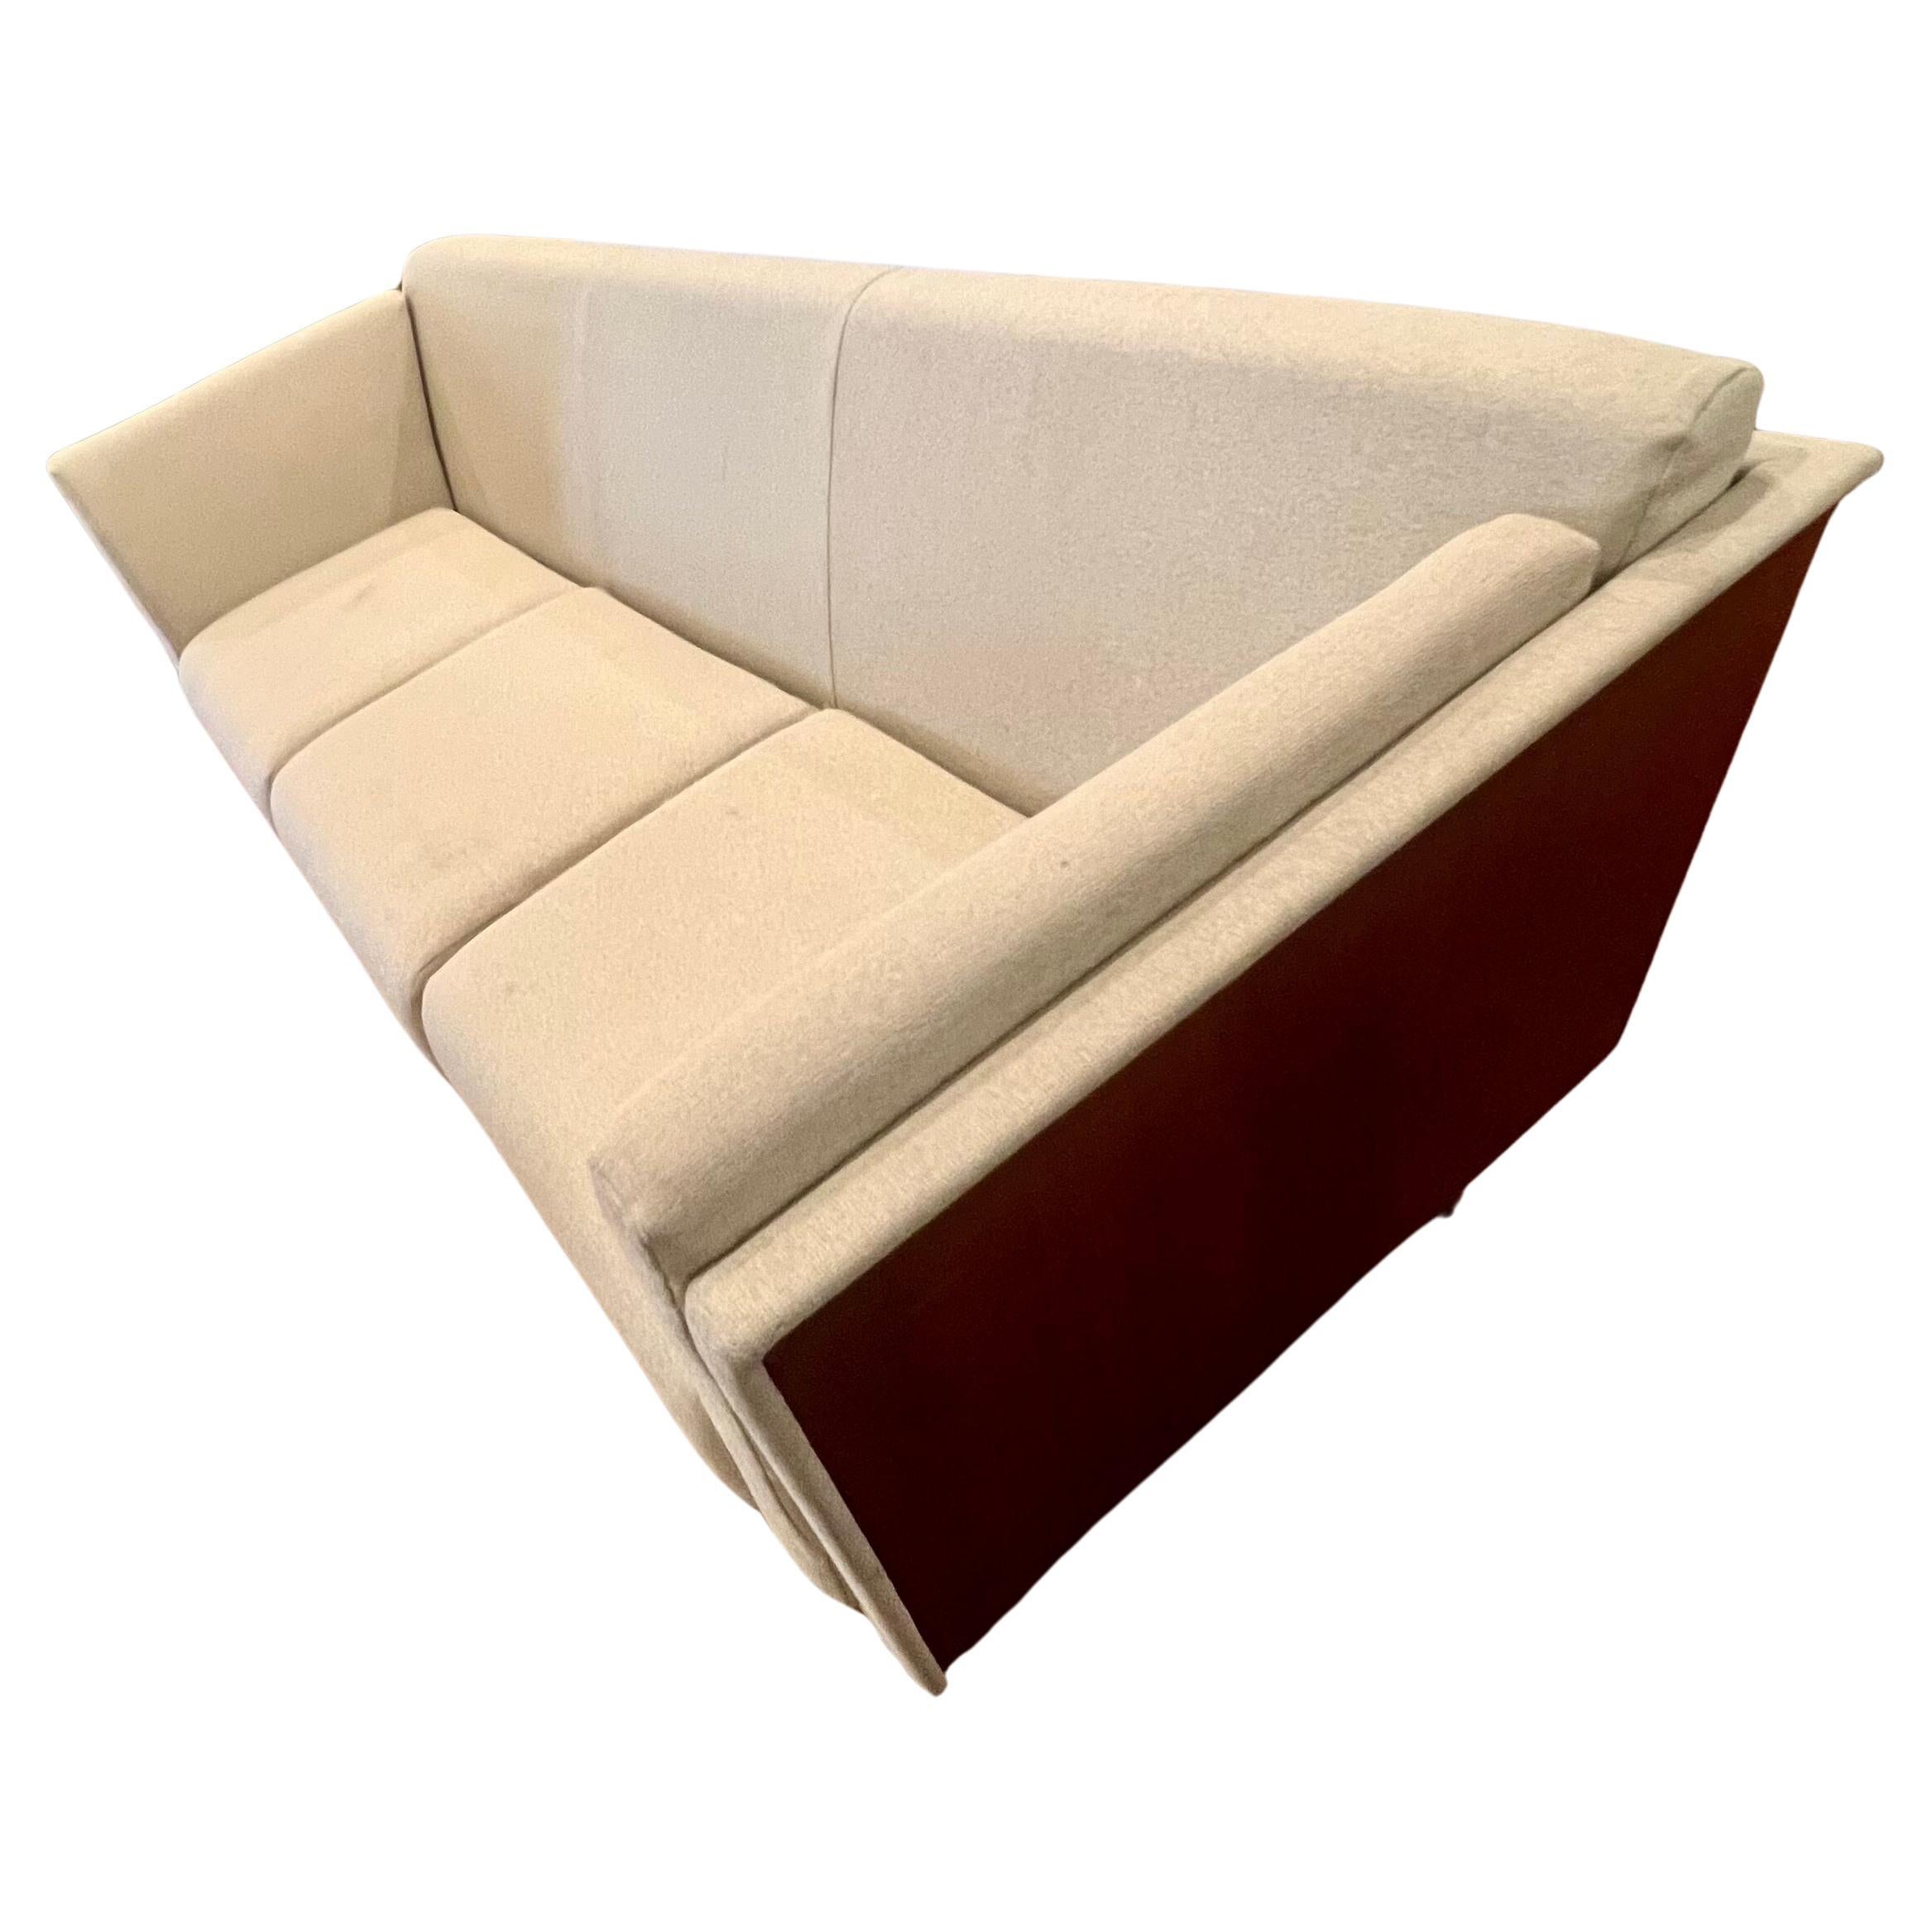 Cet incroyable canapé Goetz, créé par Mark Goetz pour Herman Miller, est doté d'une caisse en cerisier, d'un rembourrage de qualité et de pieds en aluminium. Design/One en 1998, quelques légères taches comme indiqué, vendu en l'état. Cette pièce est